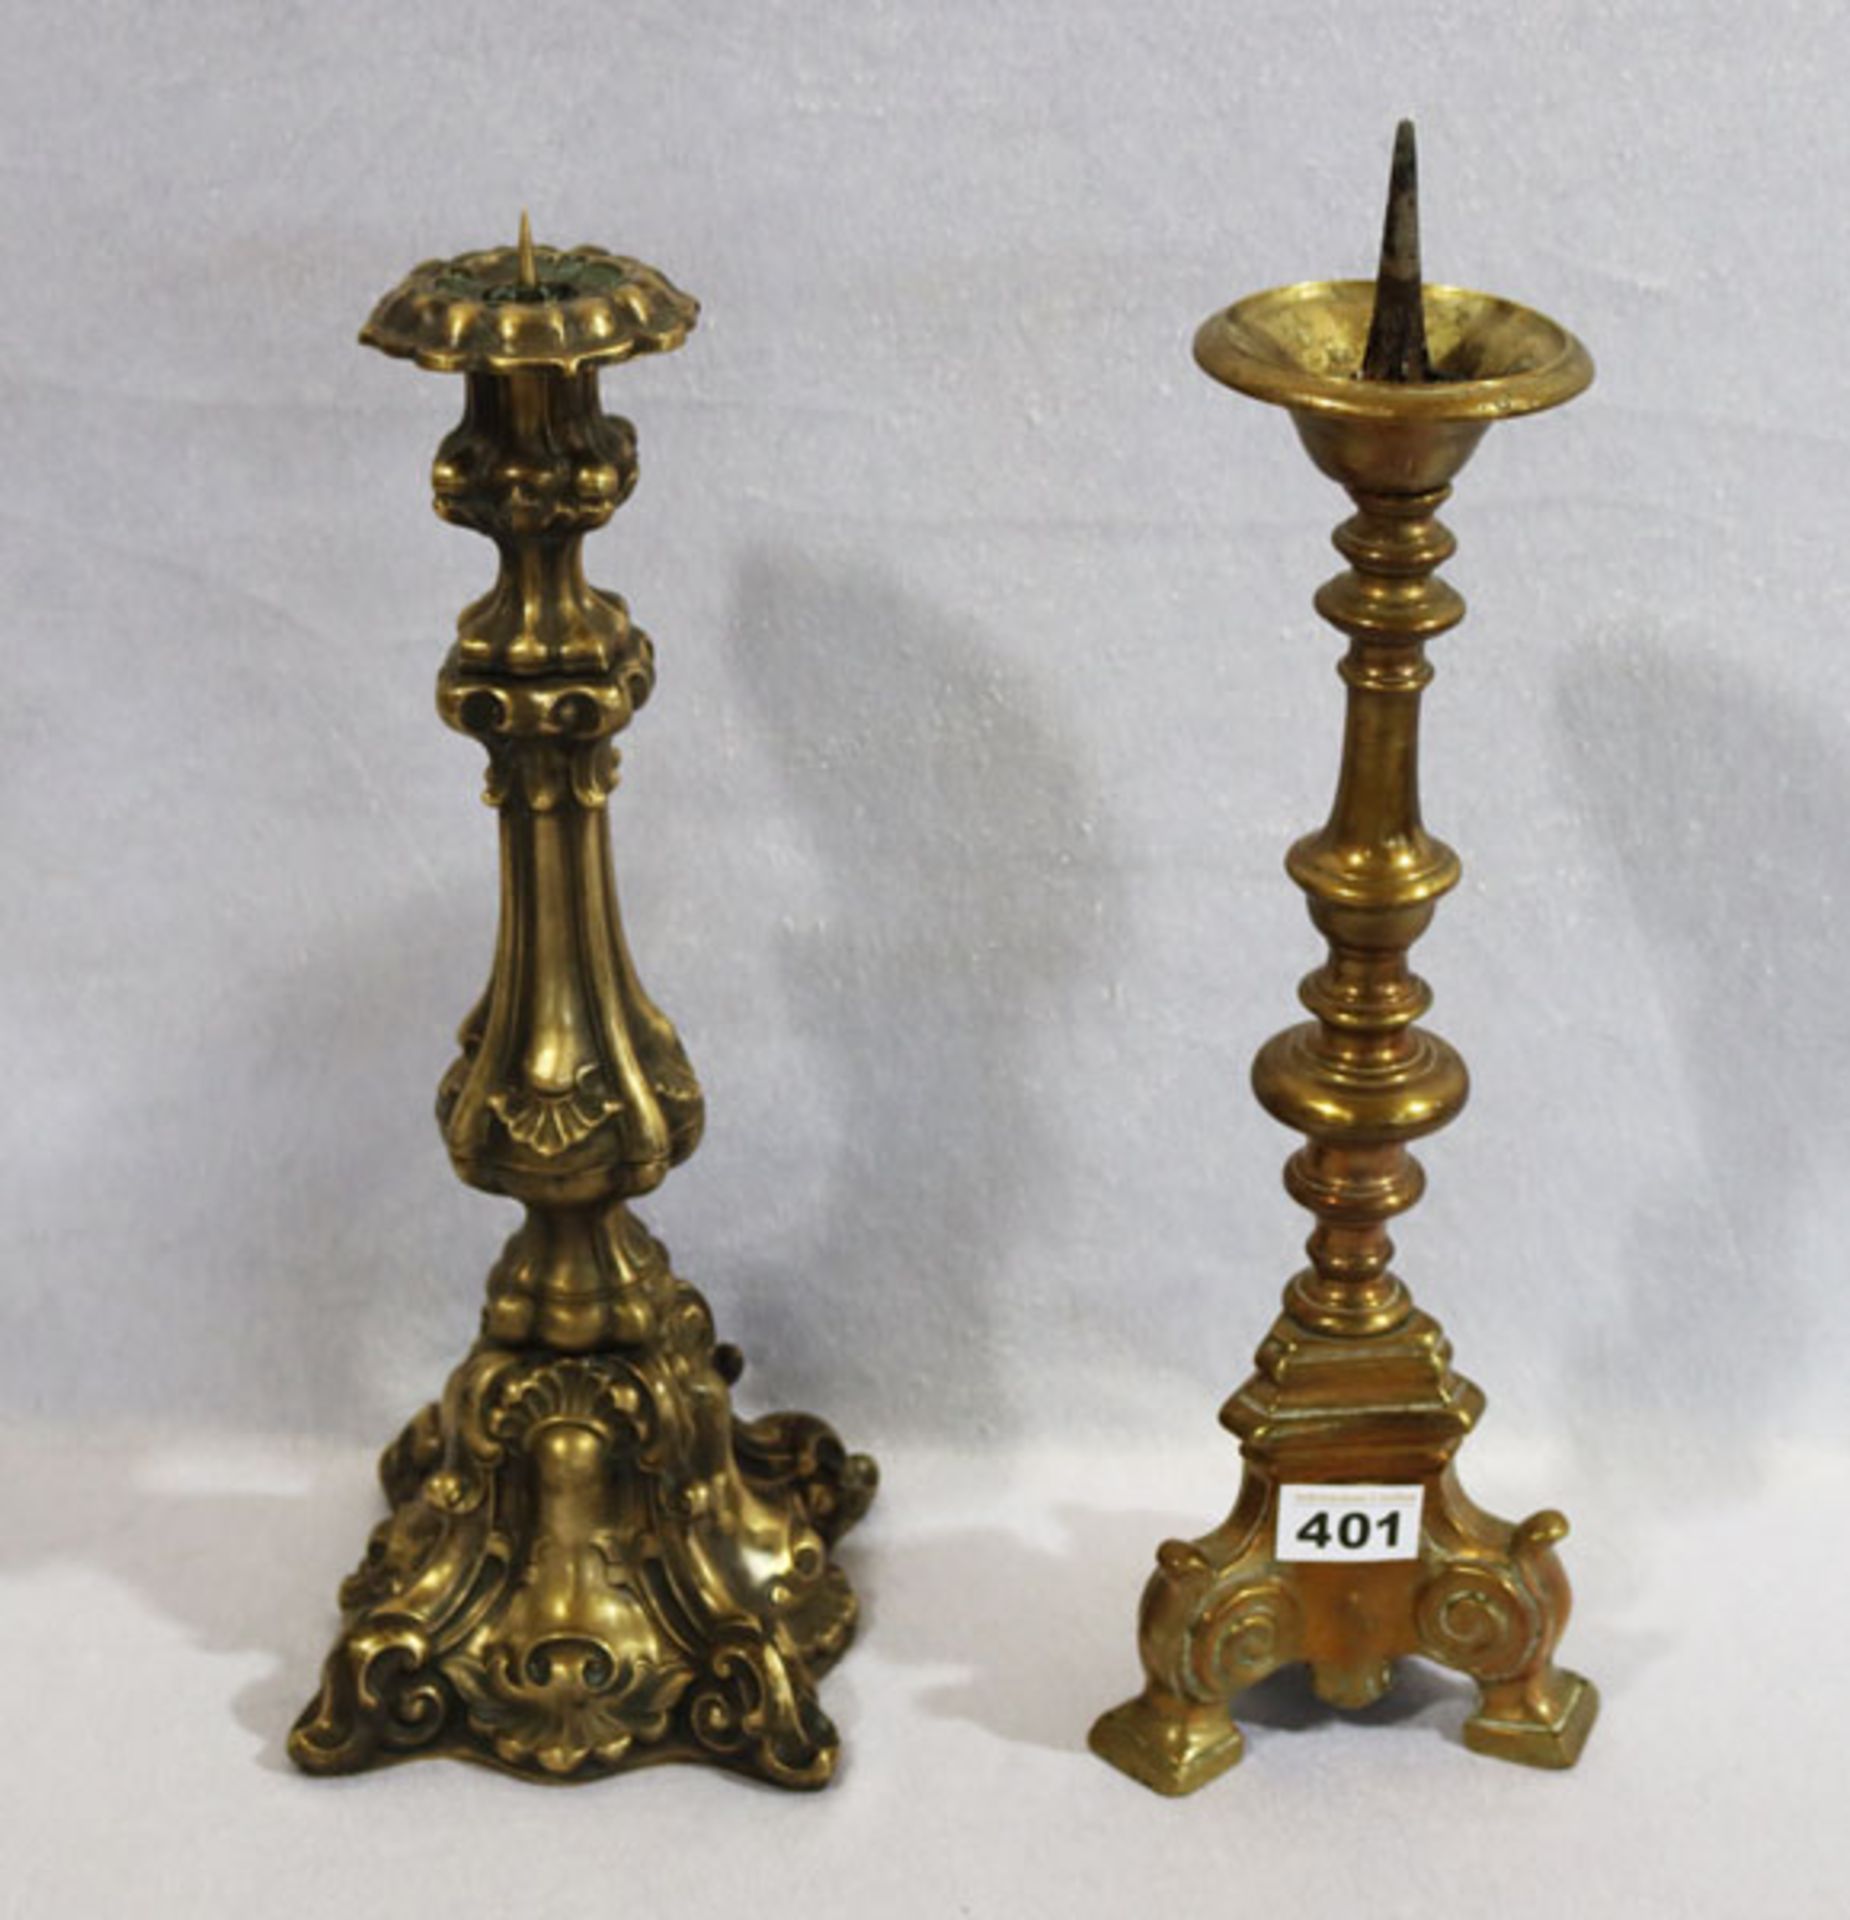 Bronze Kerzenleuchter, H 45 cm, und Messing Kerzenleuchter mit Reliefdekor, patiniert, H 42 cm,